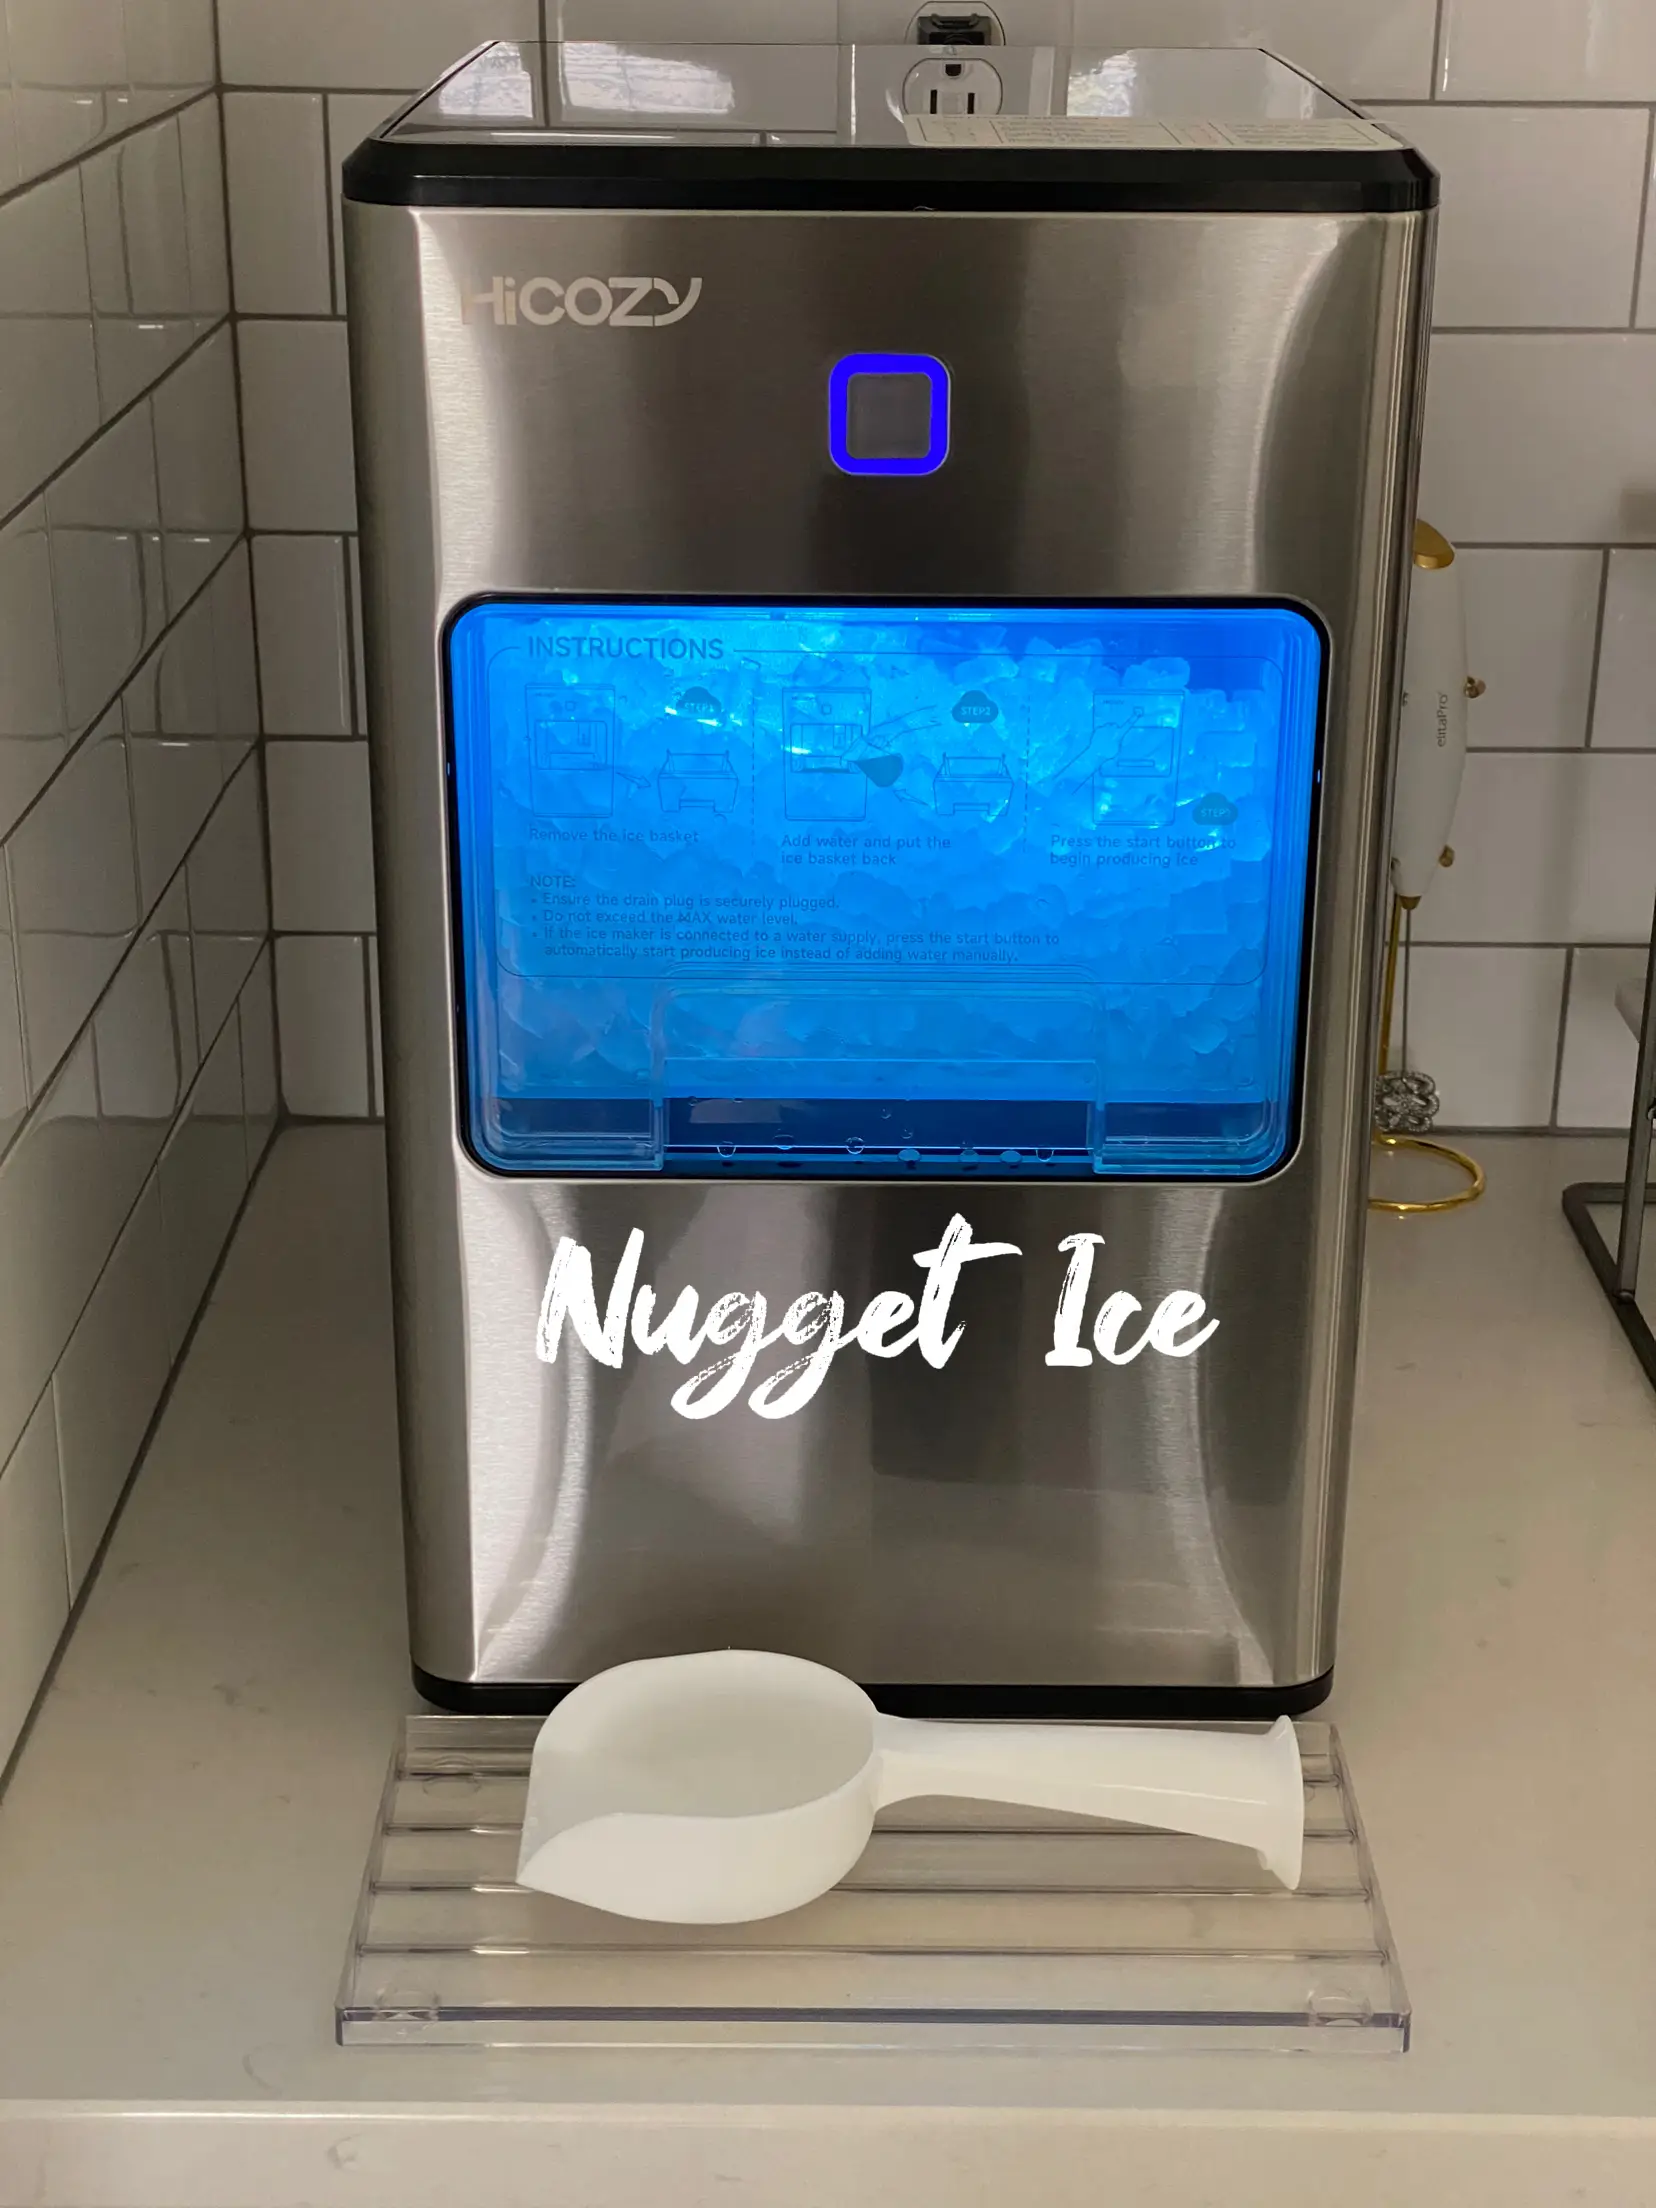 HiCozy Countertop Nugget Ice Maker